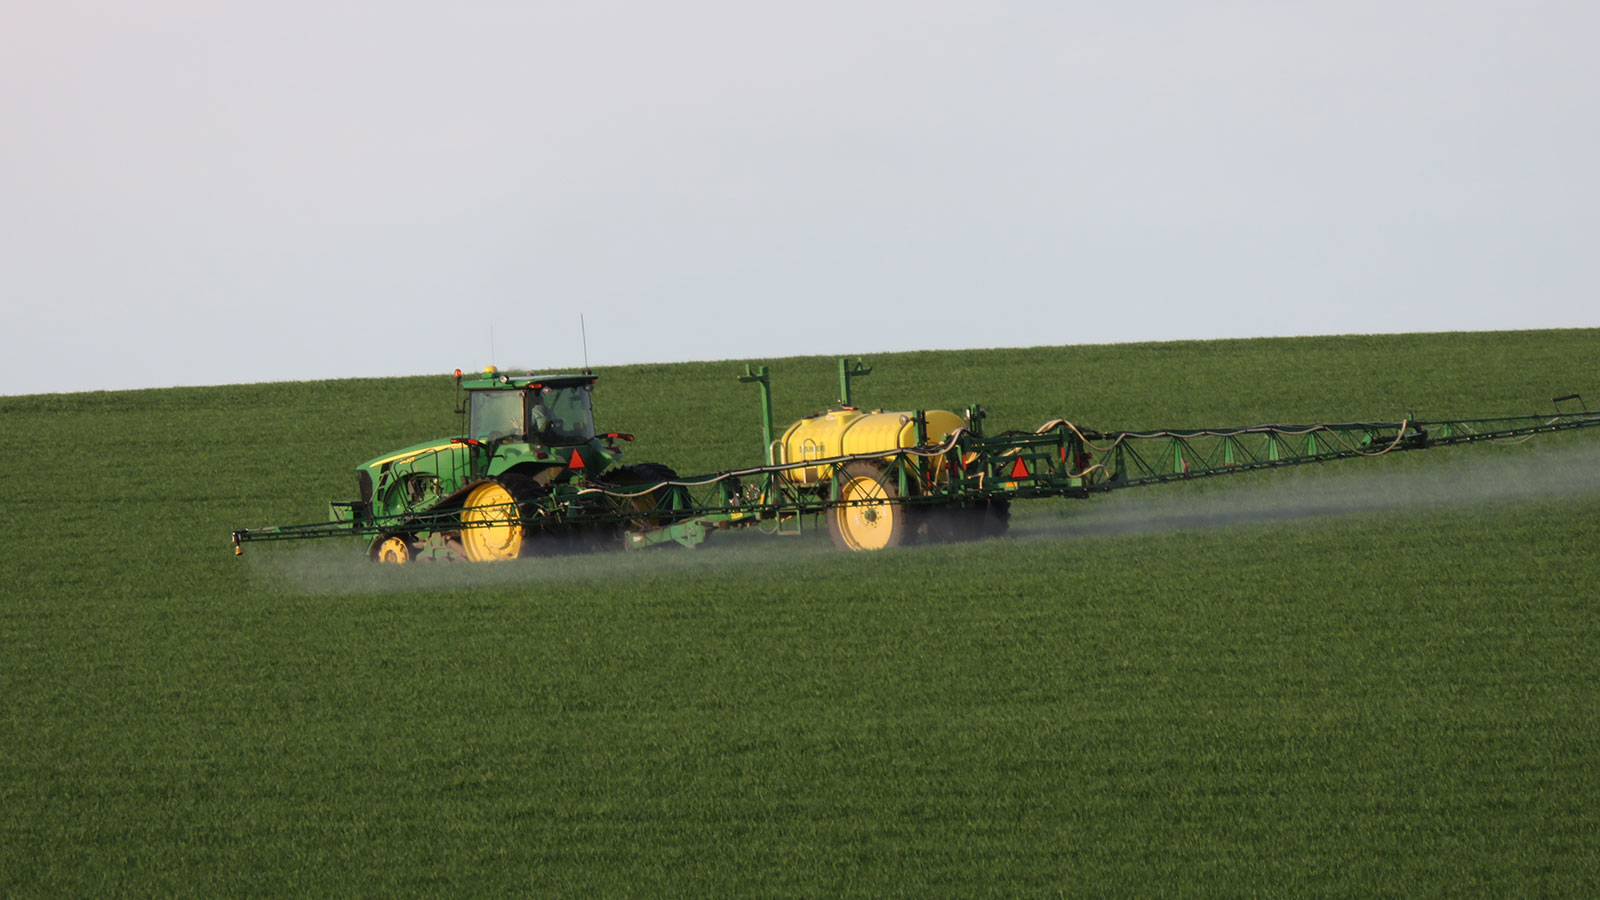 Spraying Aggressor herbicide